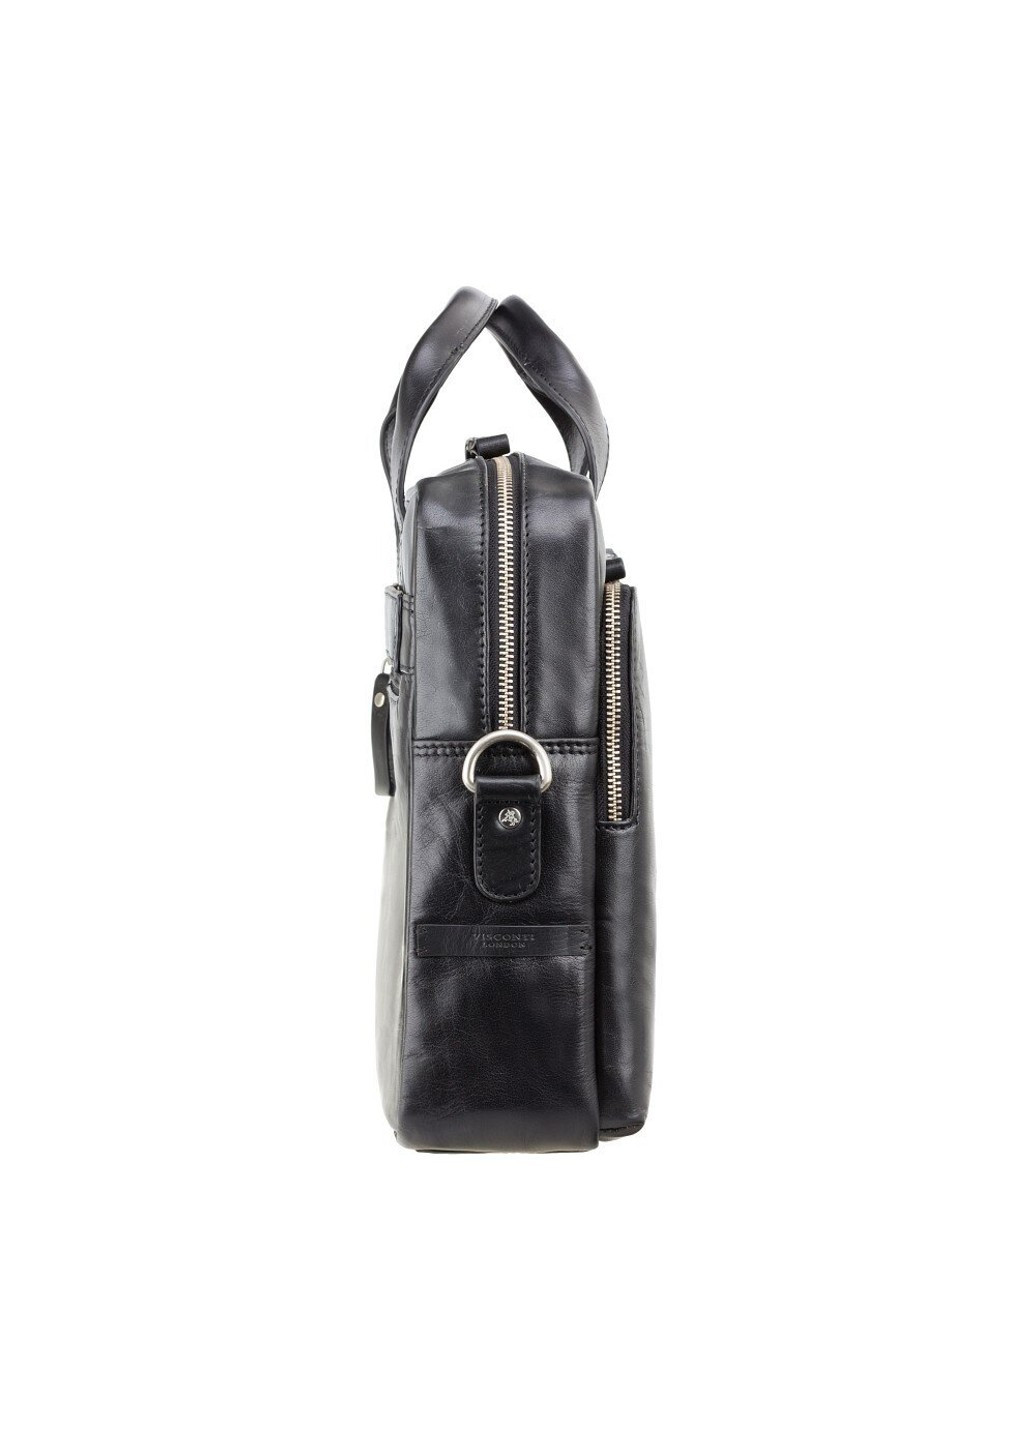 Мужская кожаная сумка с RFID защитой ml30 blk Visconti (262086625)